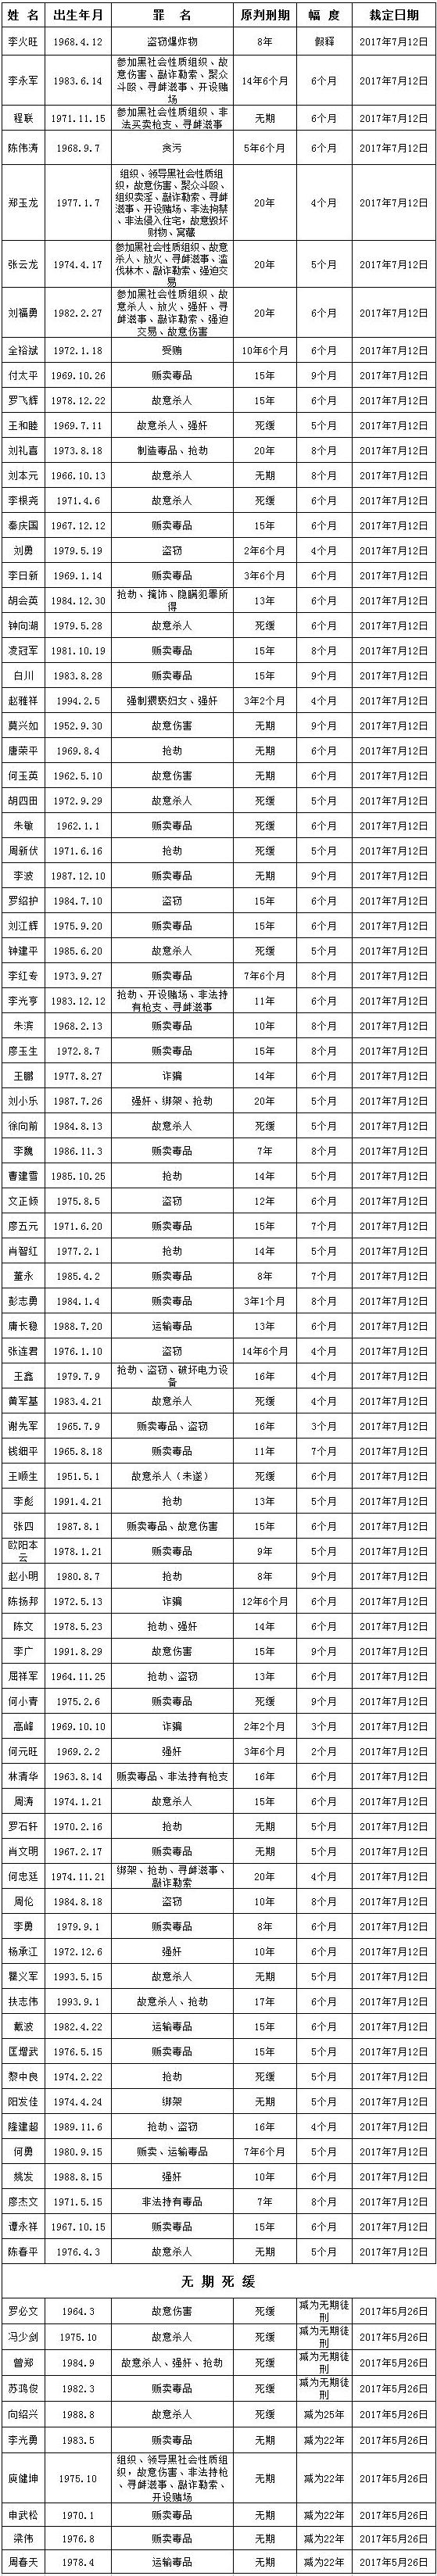 雁北监狱2017年第一批减刑假释人员名单